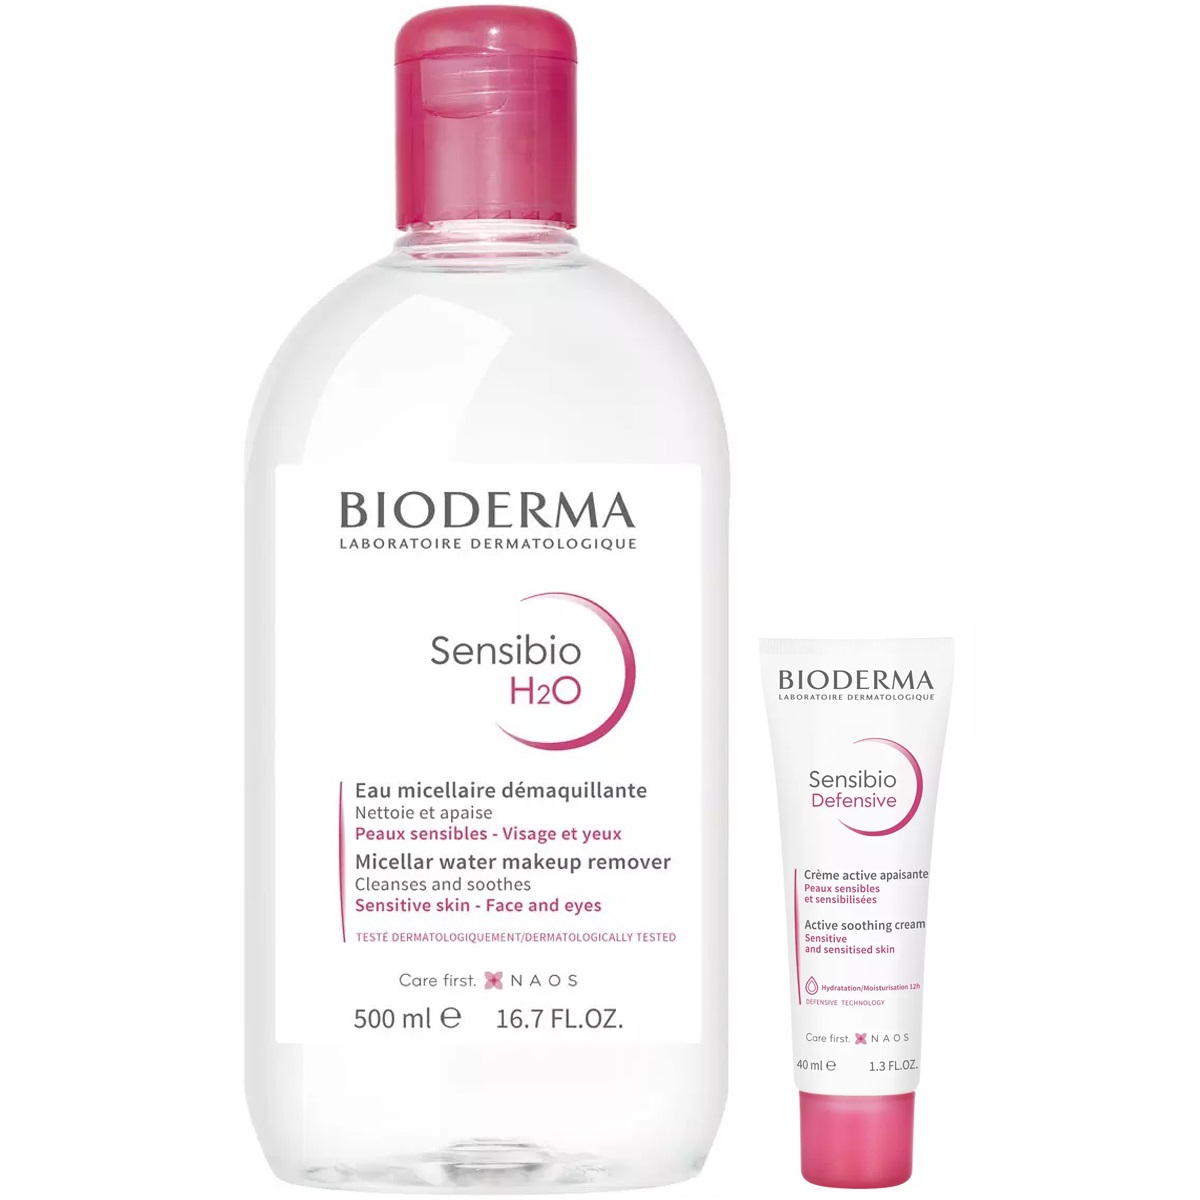 bioderma набор для ежедневного очищения кожи лосьон 250 мл мицеллярная вода 500 мл bioderma sensibio Bioderma Набор для чувствительной кожи: мицеллярная вода, 500 мл + крем, 40 мл (Bioderma, Sensibio)